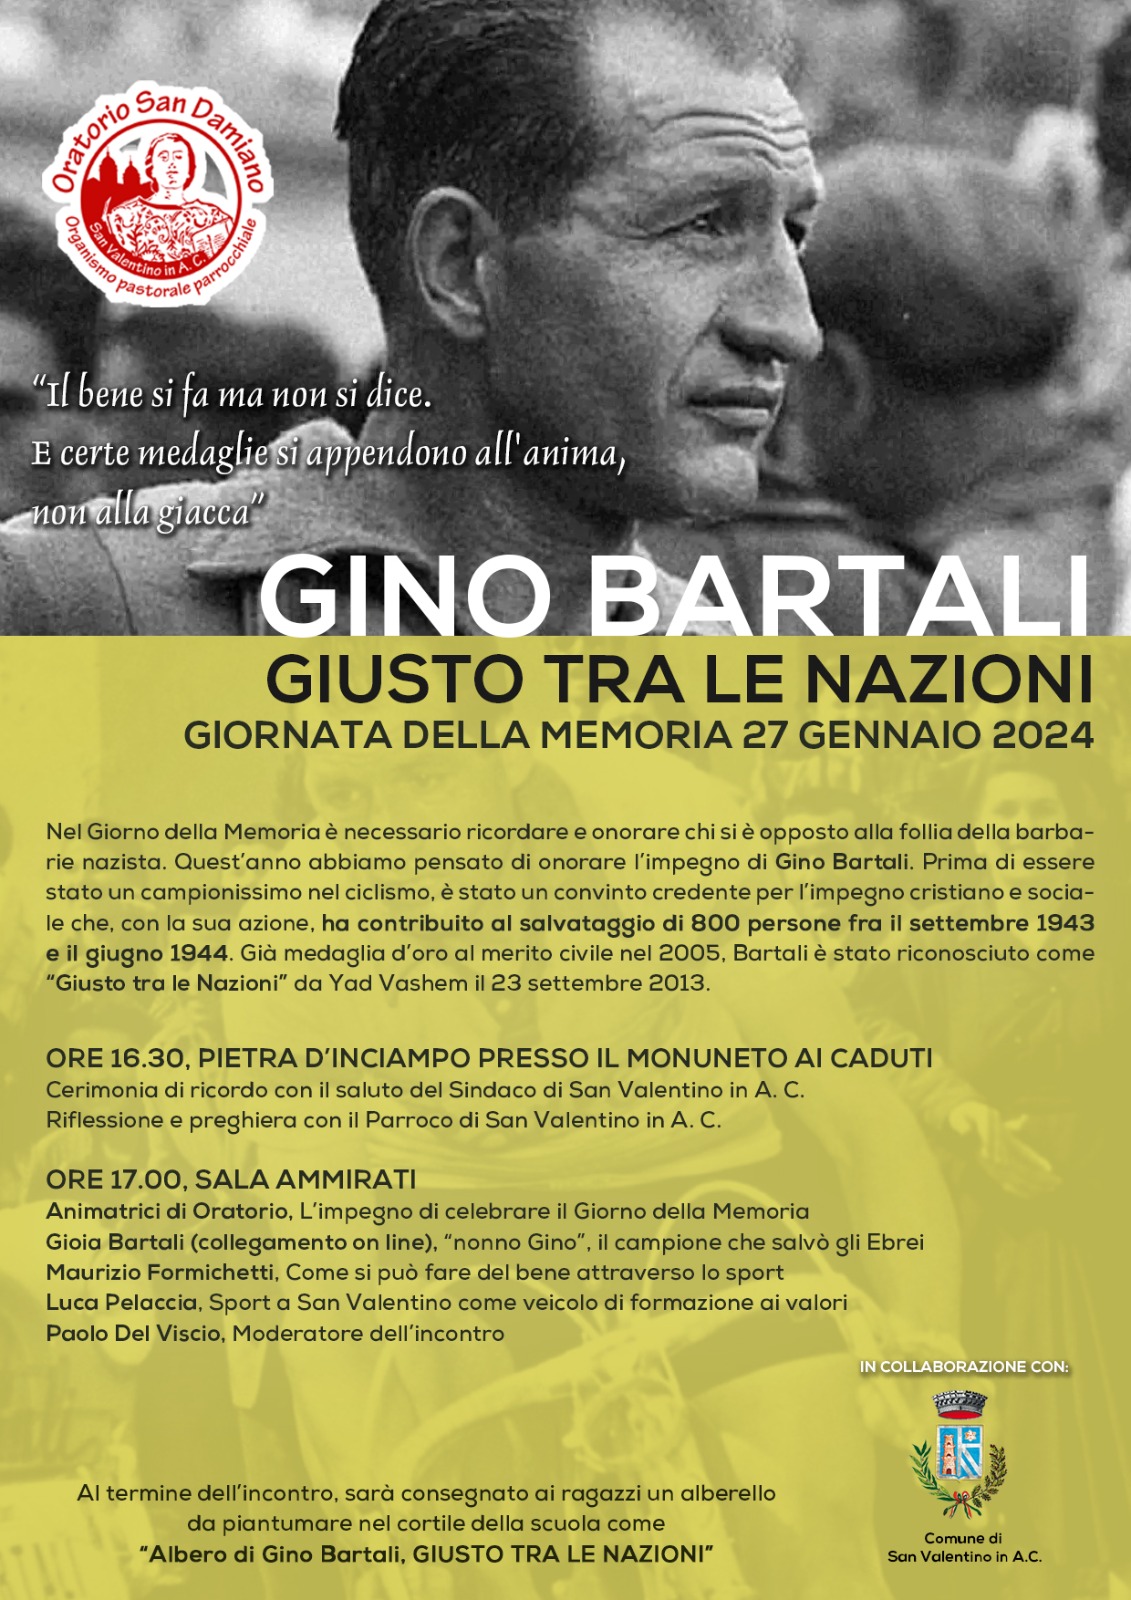 Oratorio San Damiano a San Valentino in Abruzzo Citeriore celebra la Giornata della Memoria con una riflessione su Gino Bartali